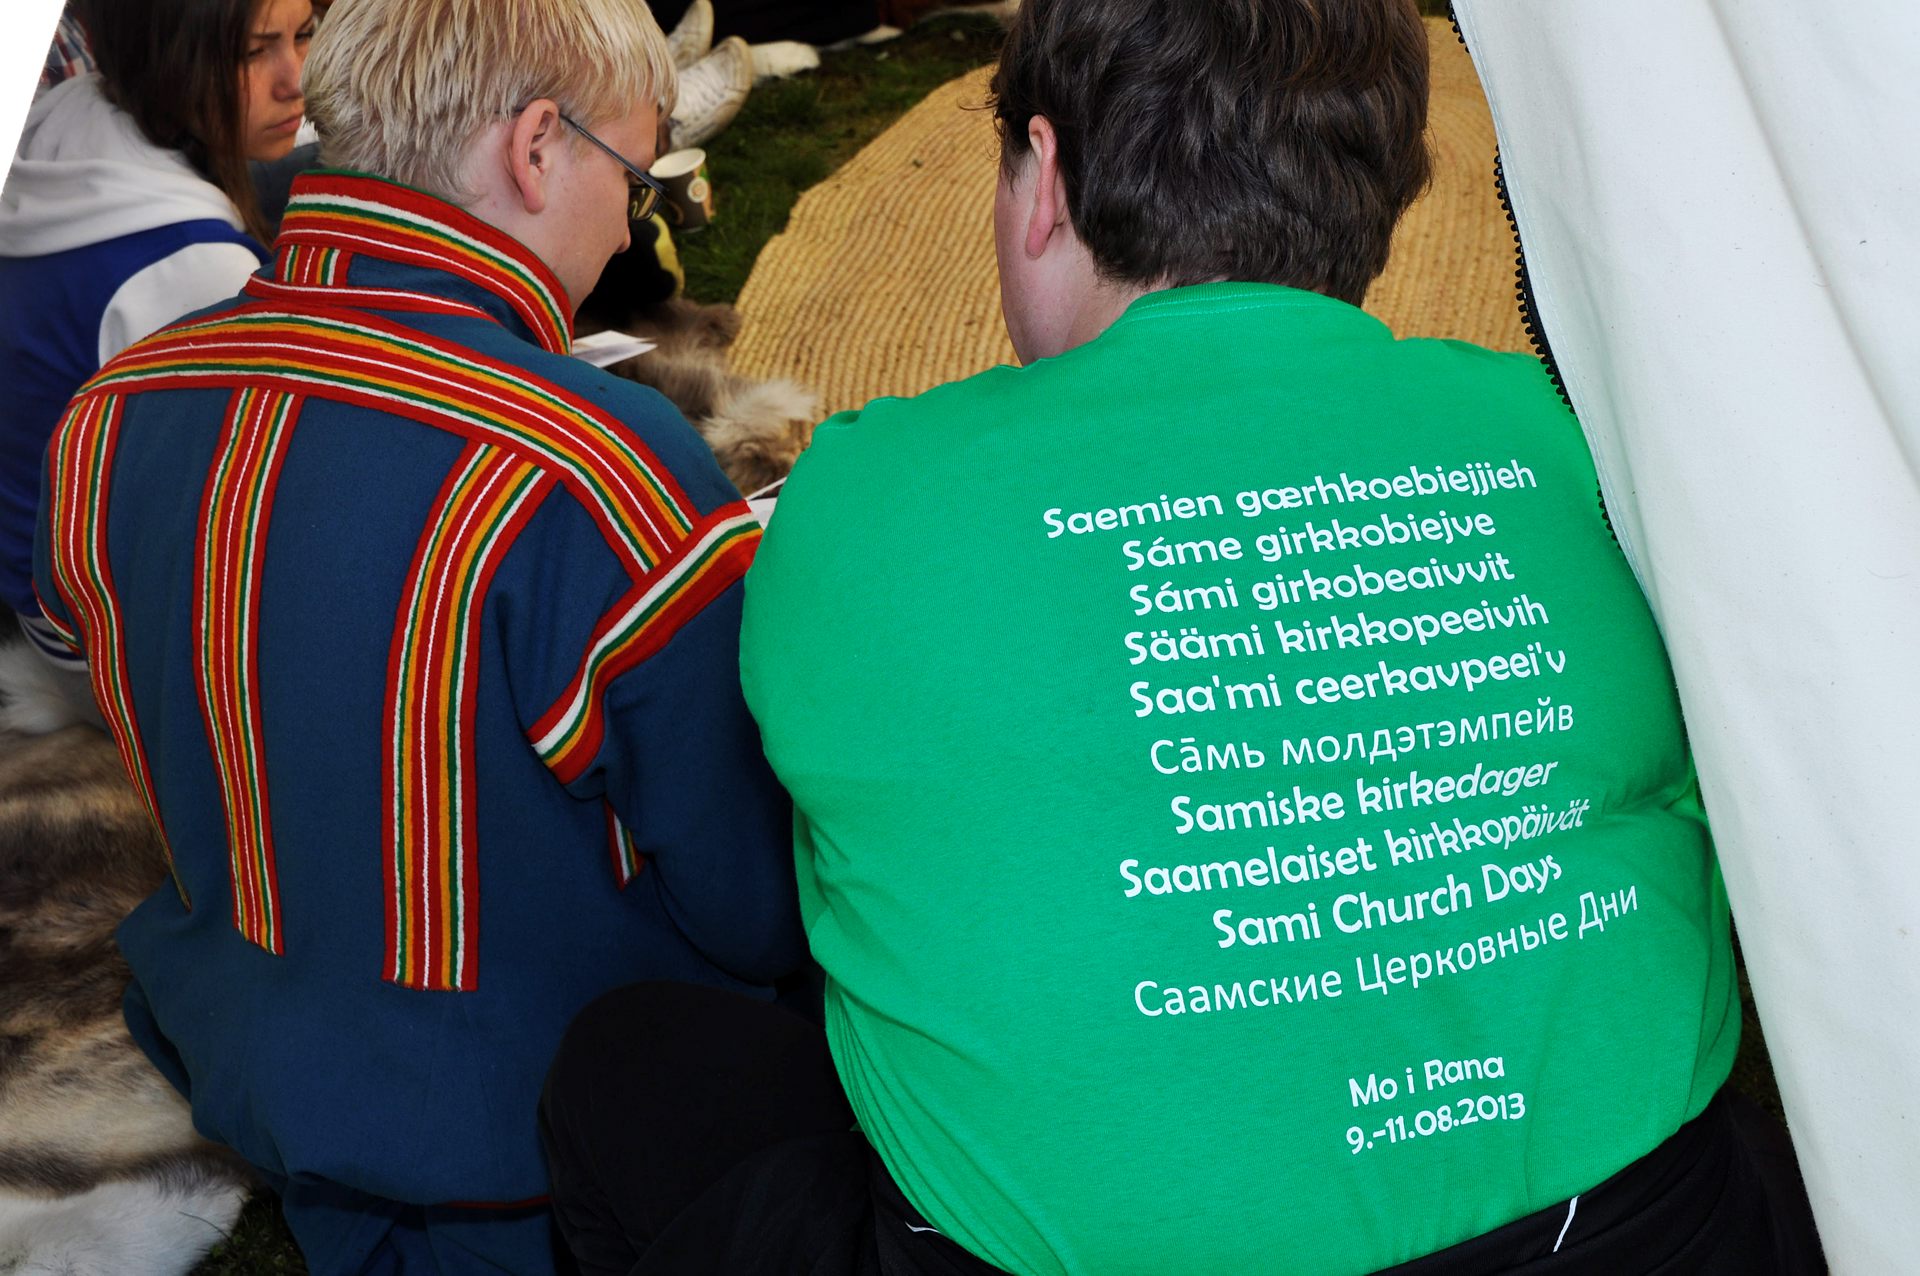 Två personer sitter bredvis varandra. Den ena har traditionell samisk dräkt. Den andra har en grön T-Shirt med texten "Samiska kyrkodagar" skrivet på et mängd olika språk.